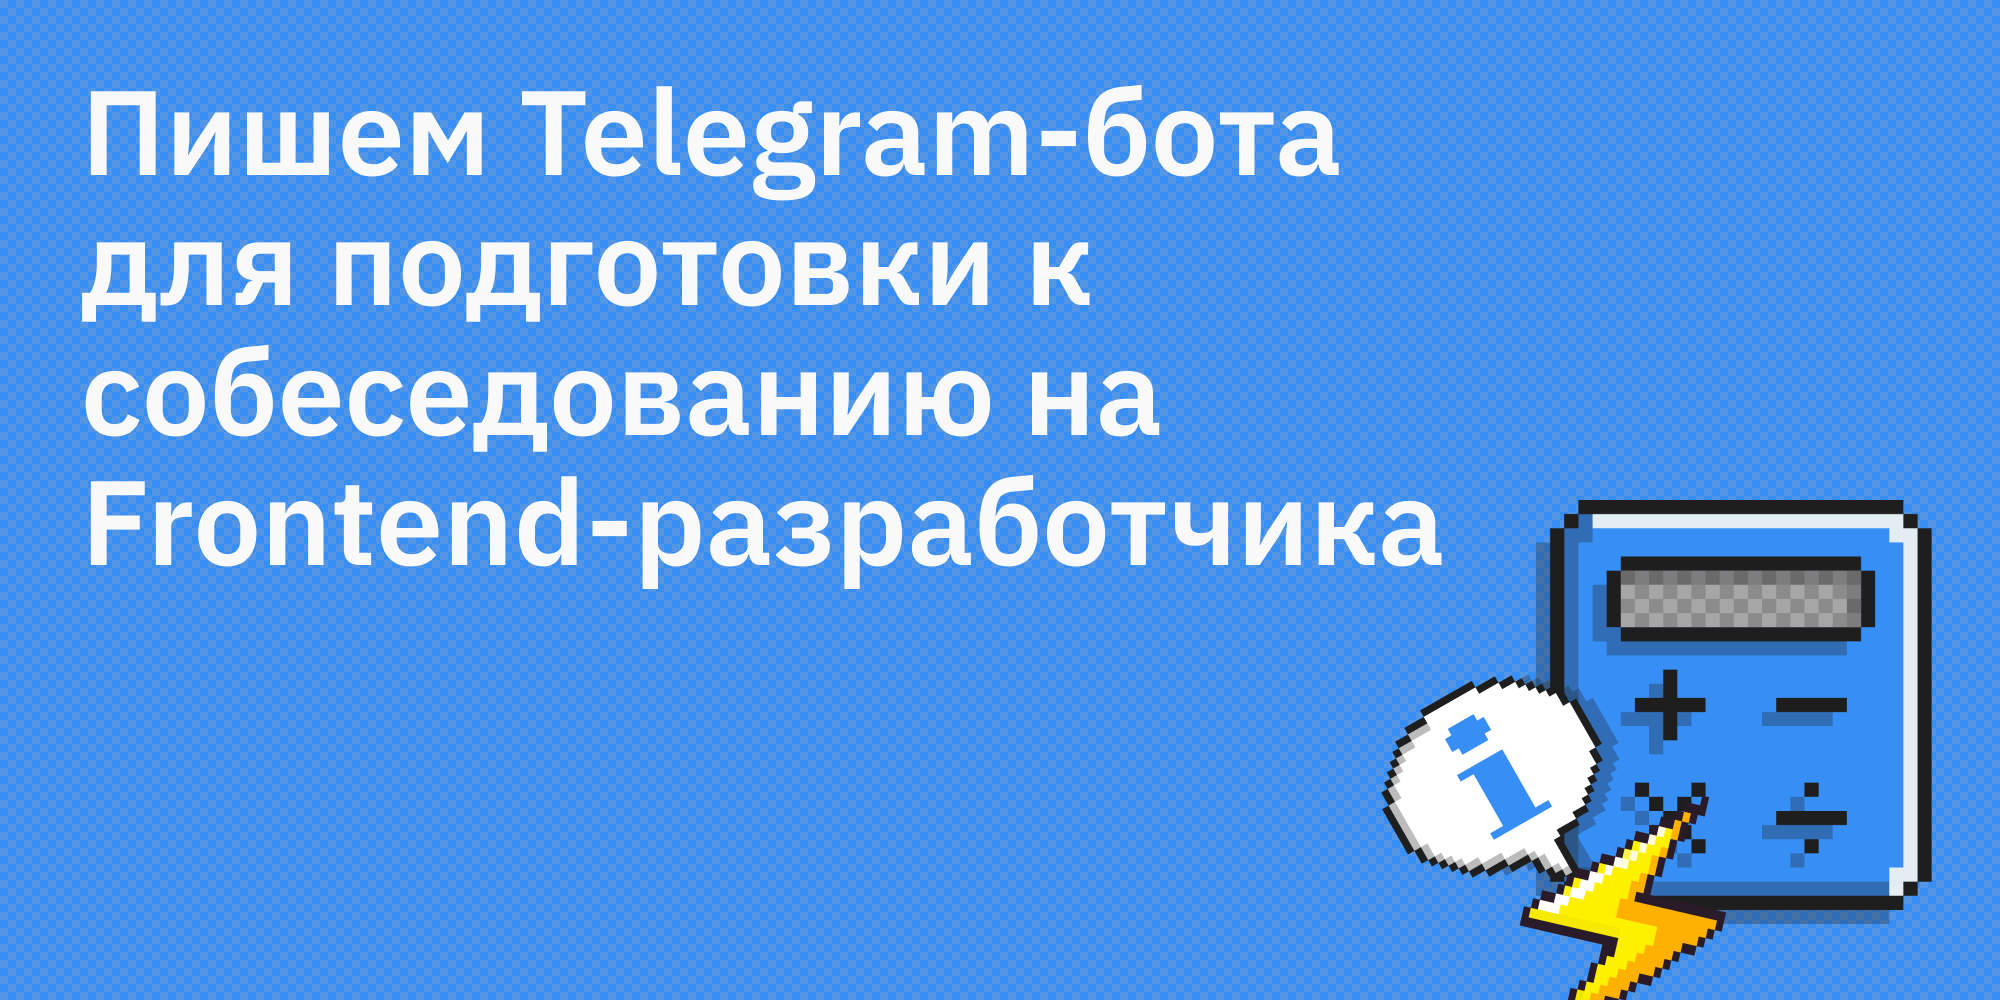 🤖👨‍💻 Пишем Telegram-бота для подготовки к собеседованию на Frontend-разработчика